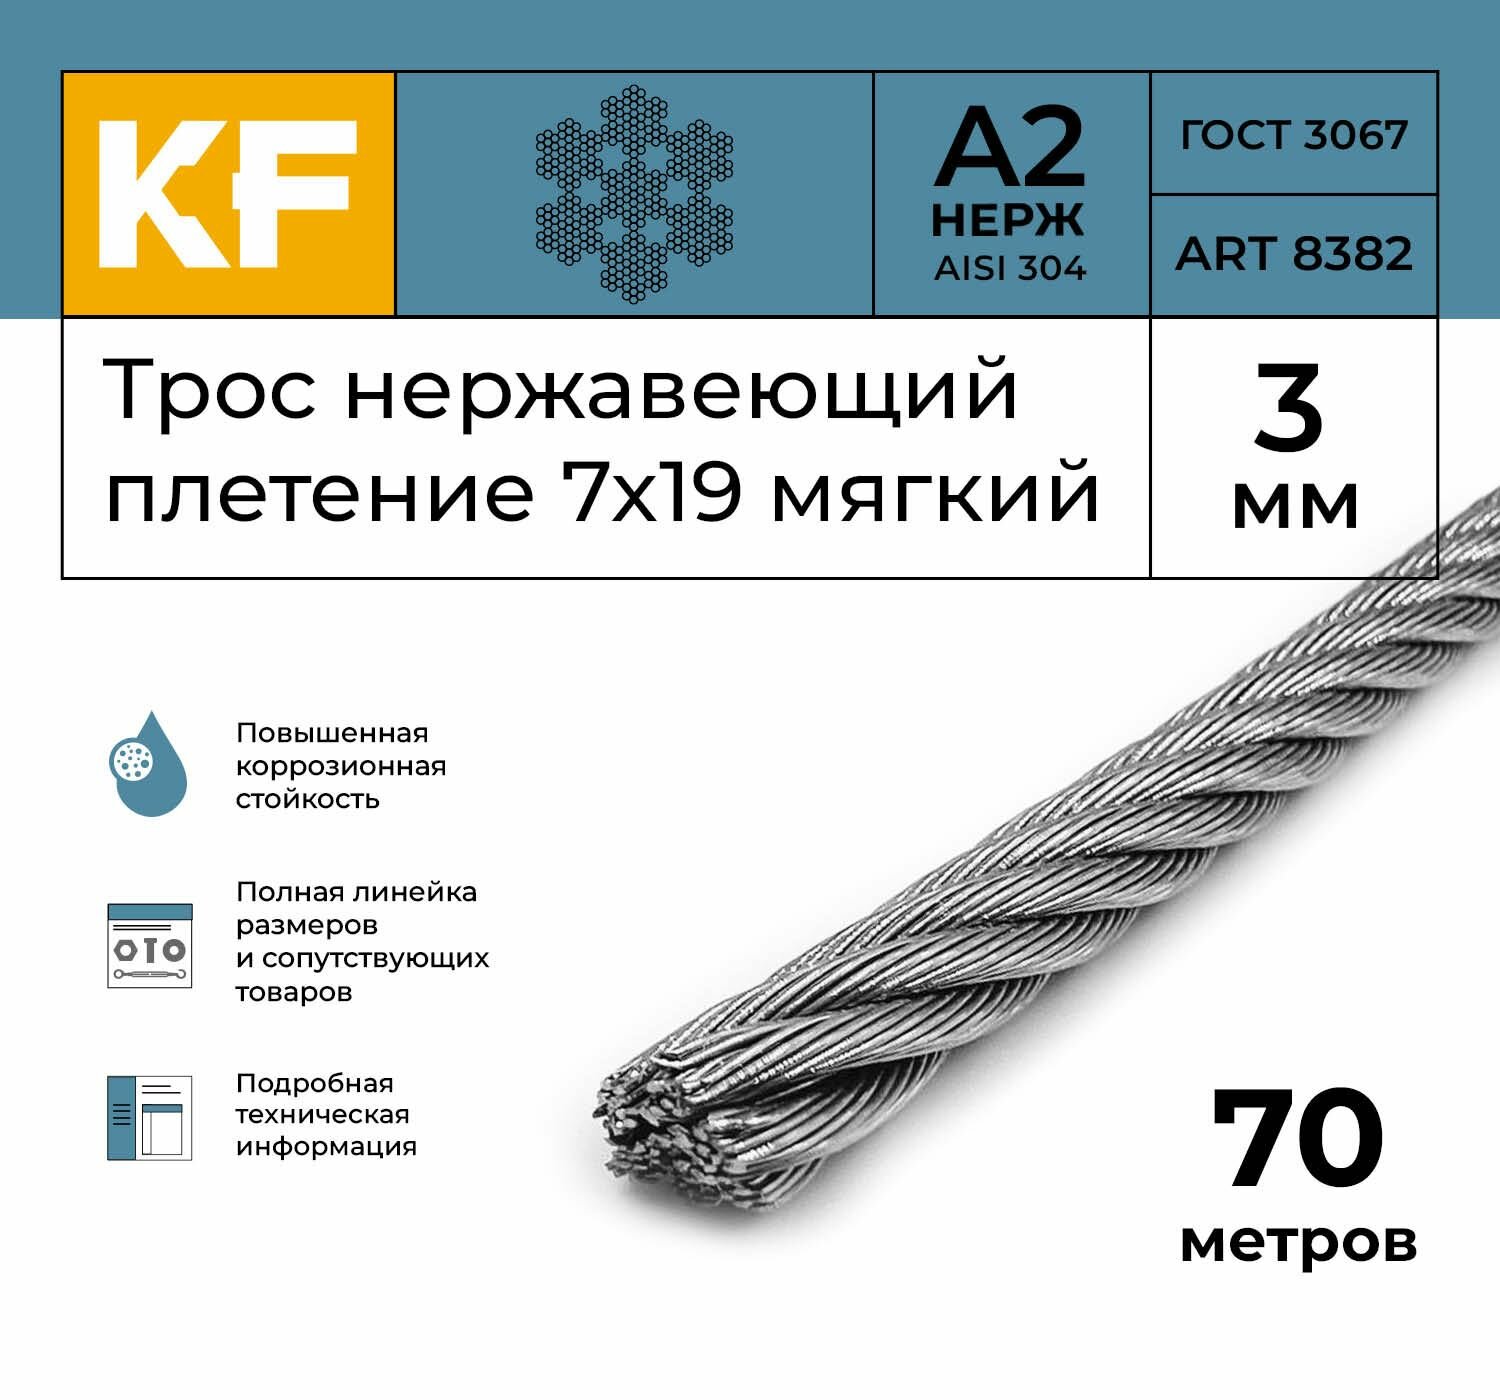 Трос нержавеющий 3 мм сталь А2 плетение 7х19 мягкий 70 метров